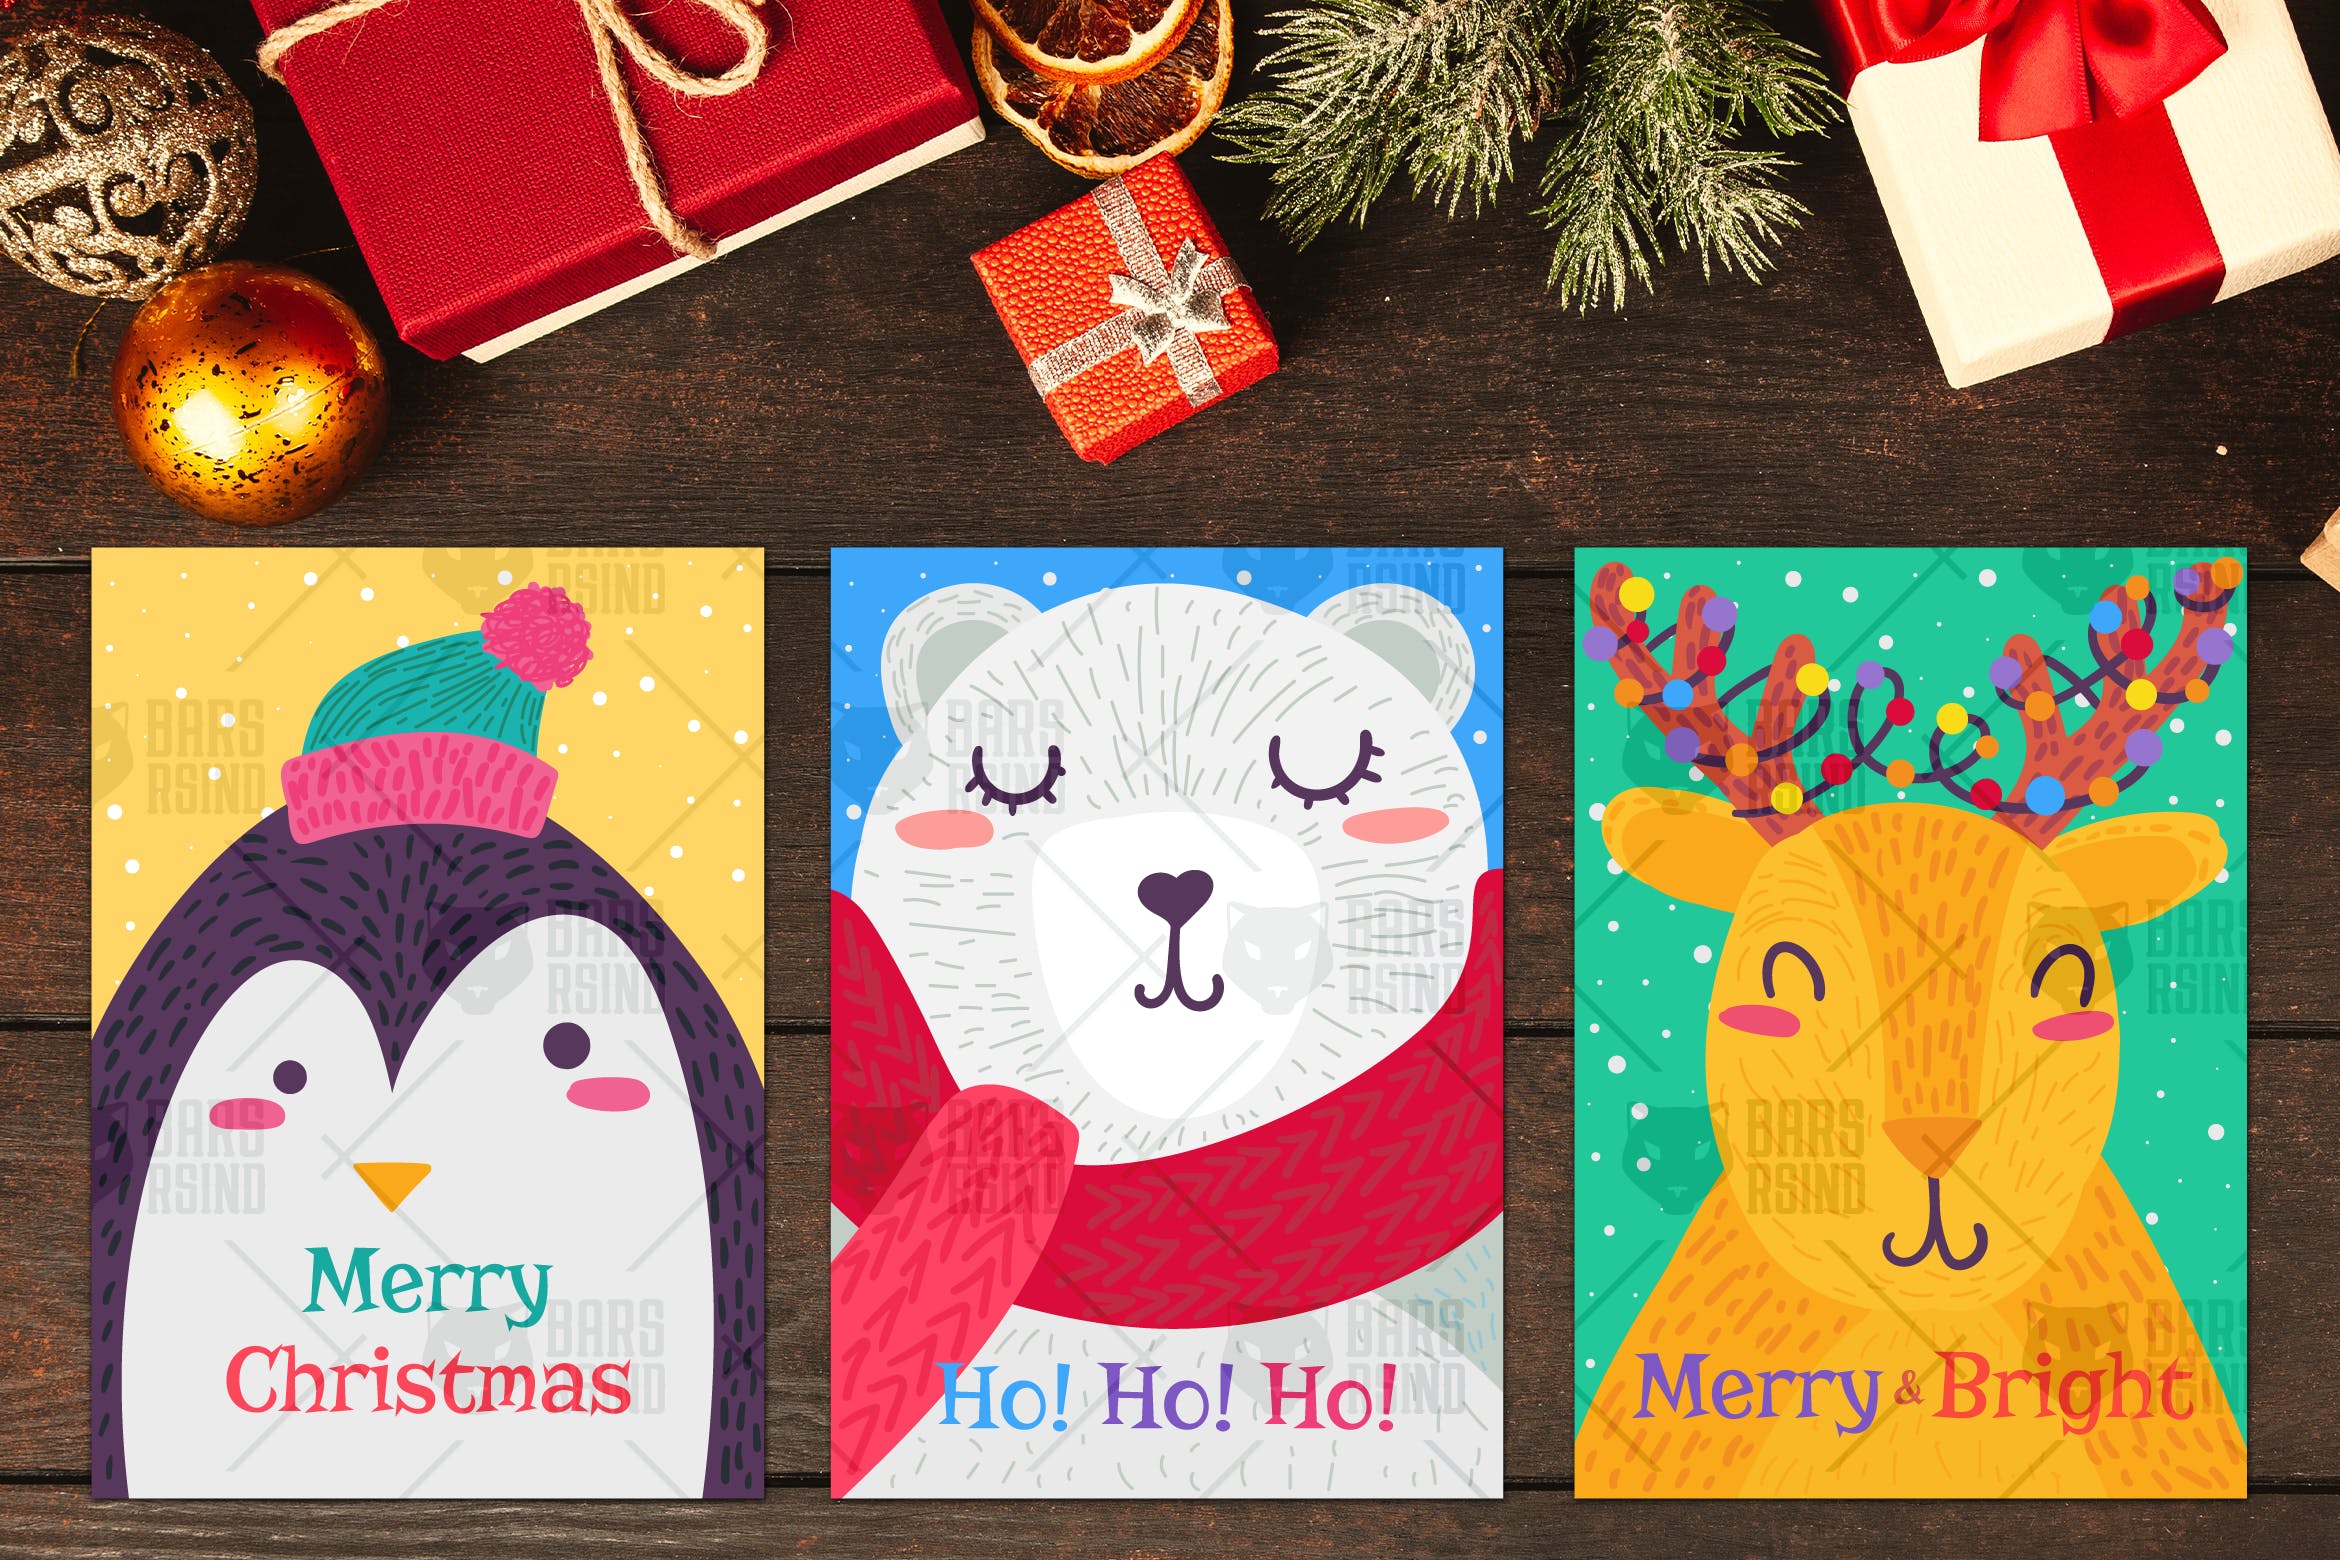 圣诞节主题卡通动物手绘图案贺卡设计模板 Christmas Greeting Cards With Animals Set插图